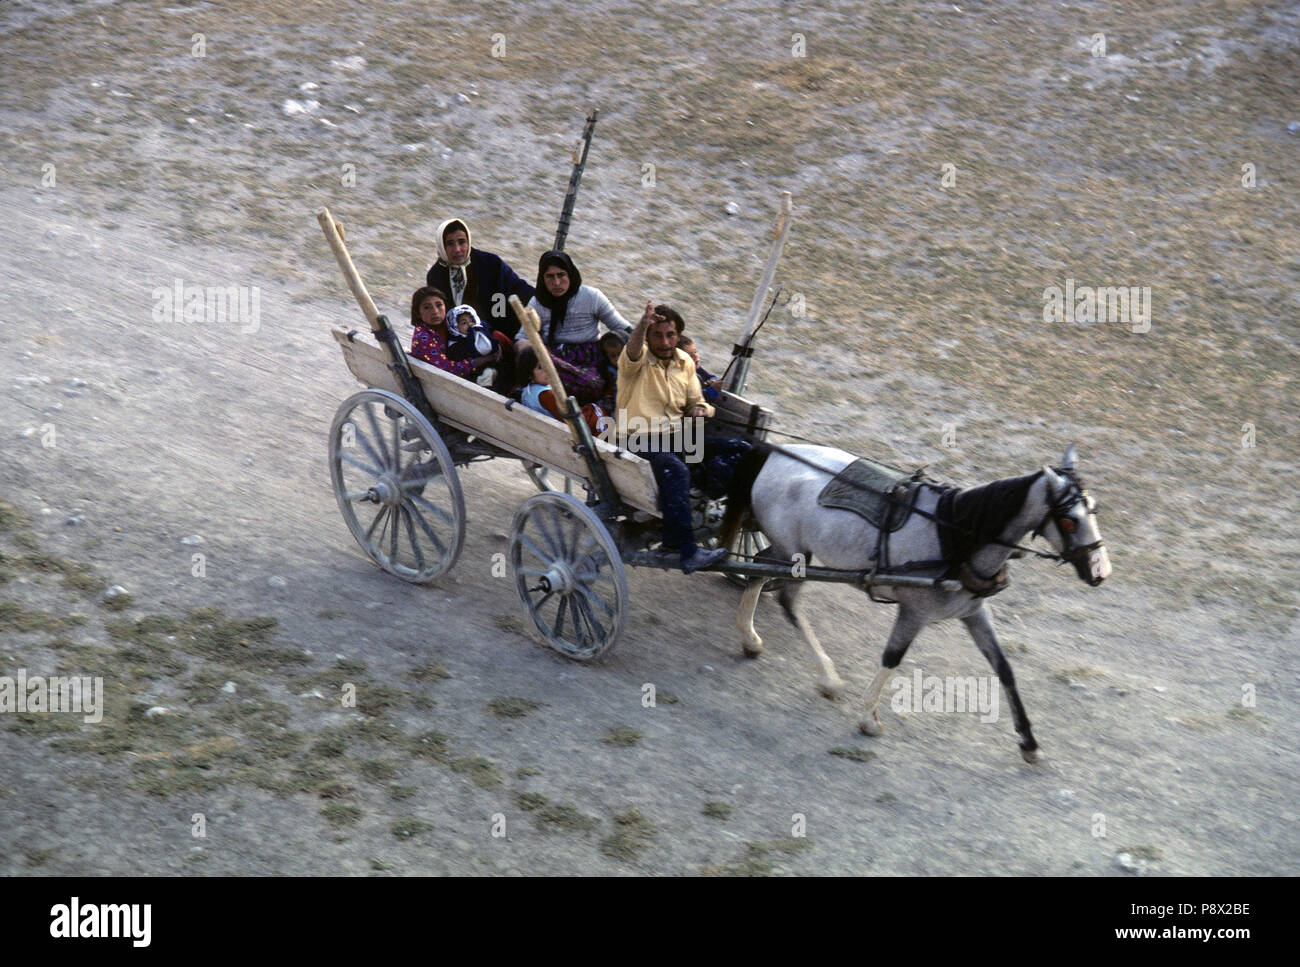 Vu de dessus, une famille turque dont les grands-parents et enfants dash le long d'une piste poussiéreuse dans un poney en bois panier. L'Homme conduisant la charrue courbes à l'appareil photo. Cappadoce, Turquie Banque D'Images